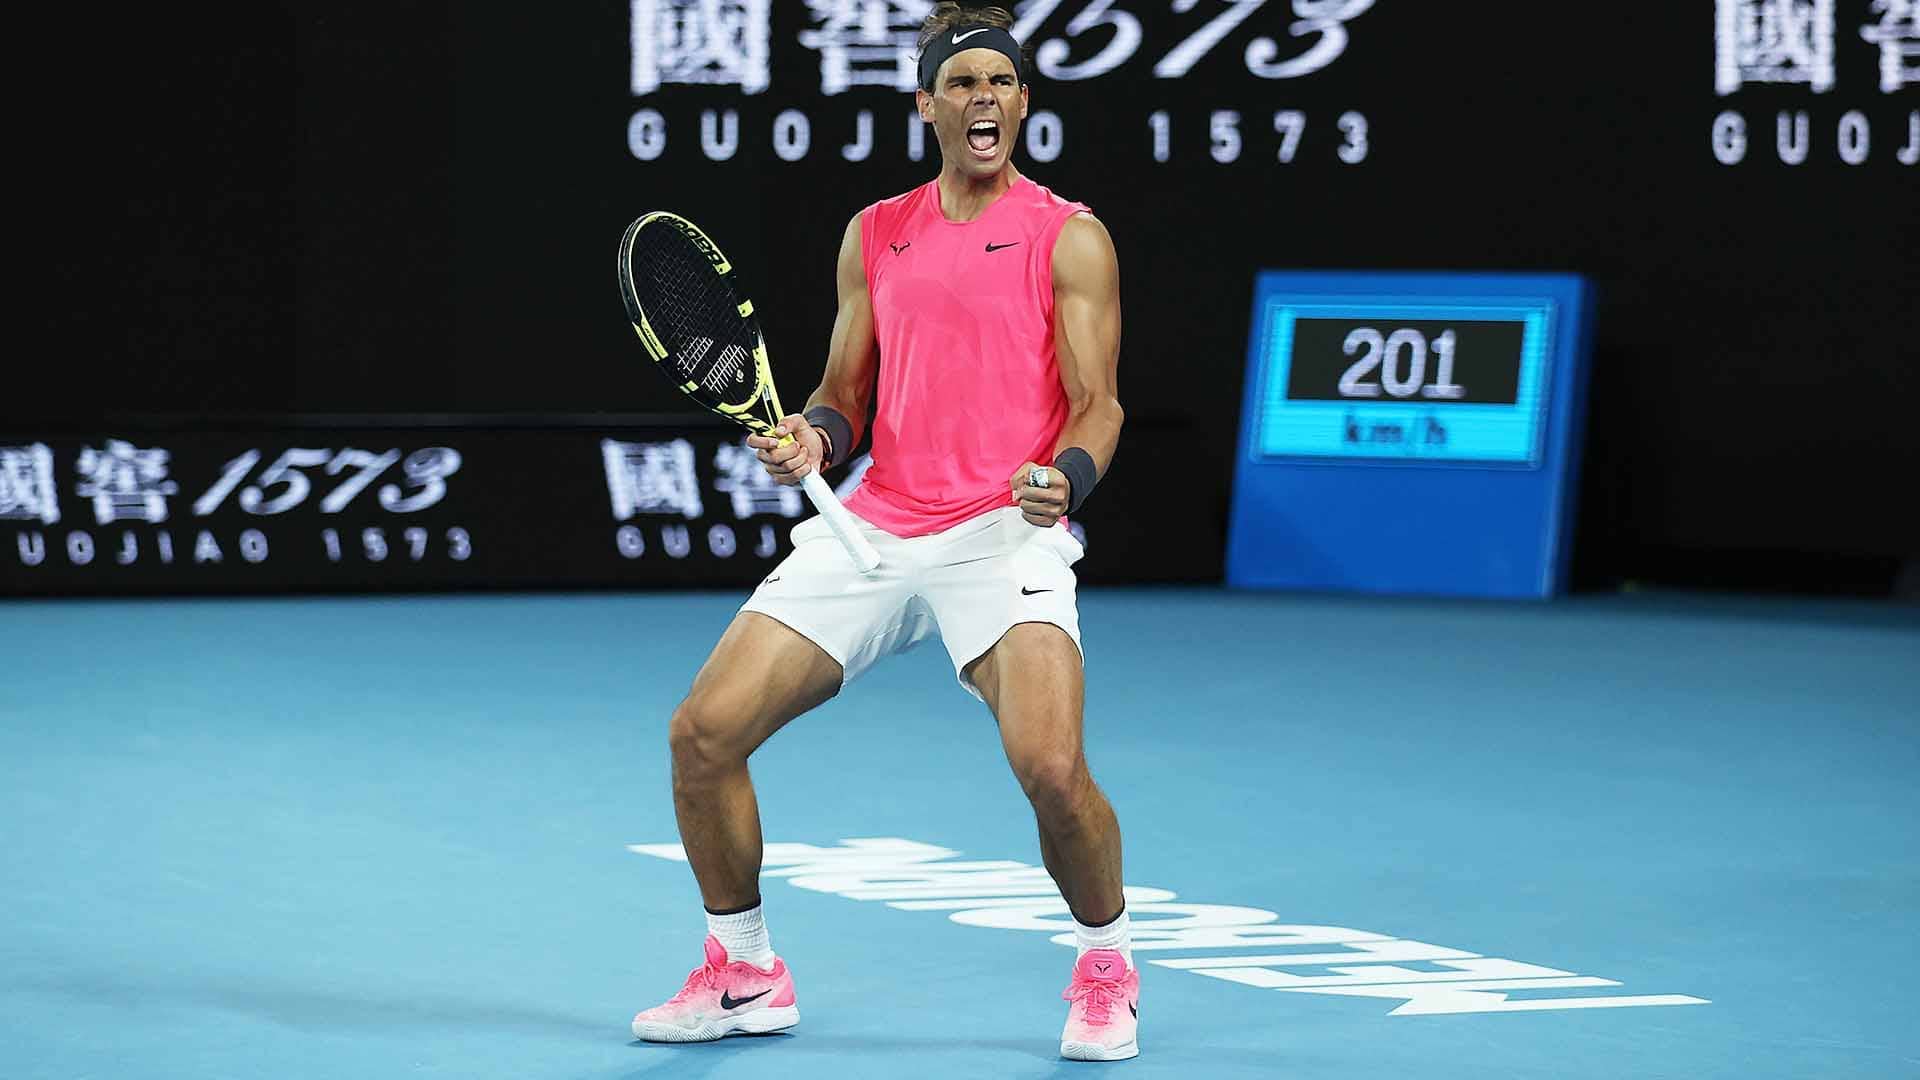 Rafael Nadal Gets Into Quarter Finals At Australian Open 2020